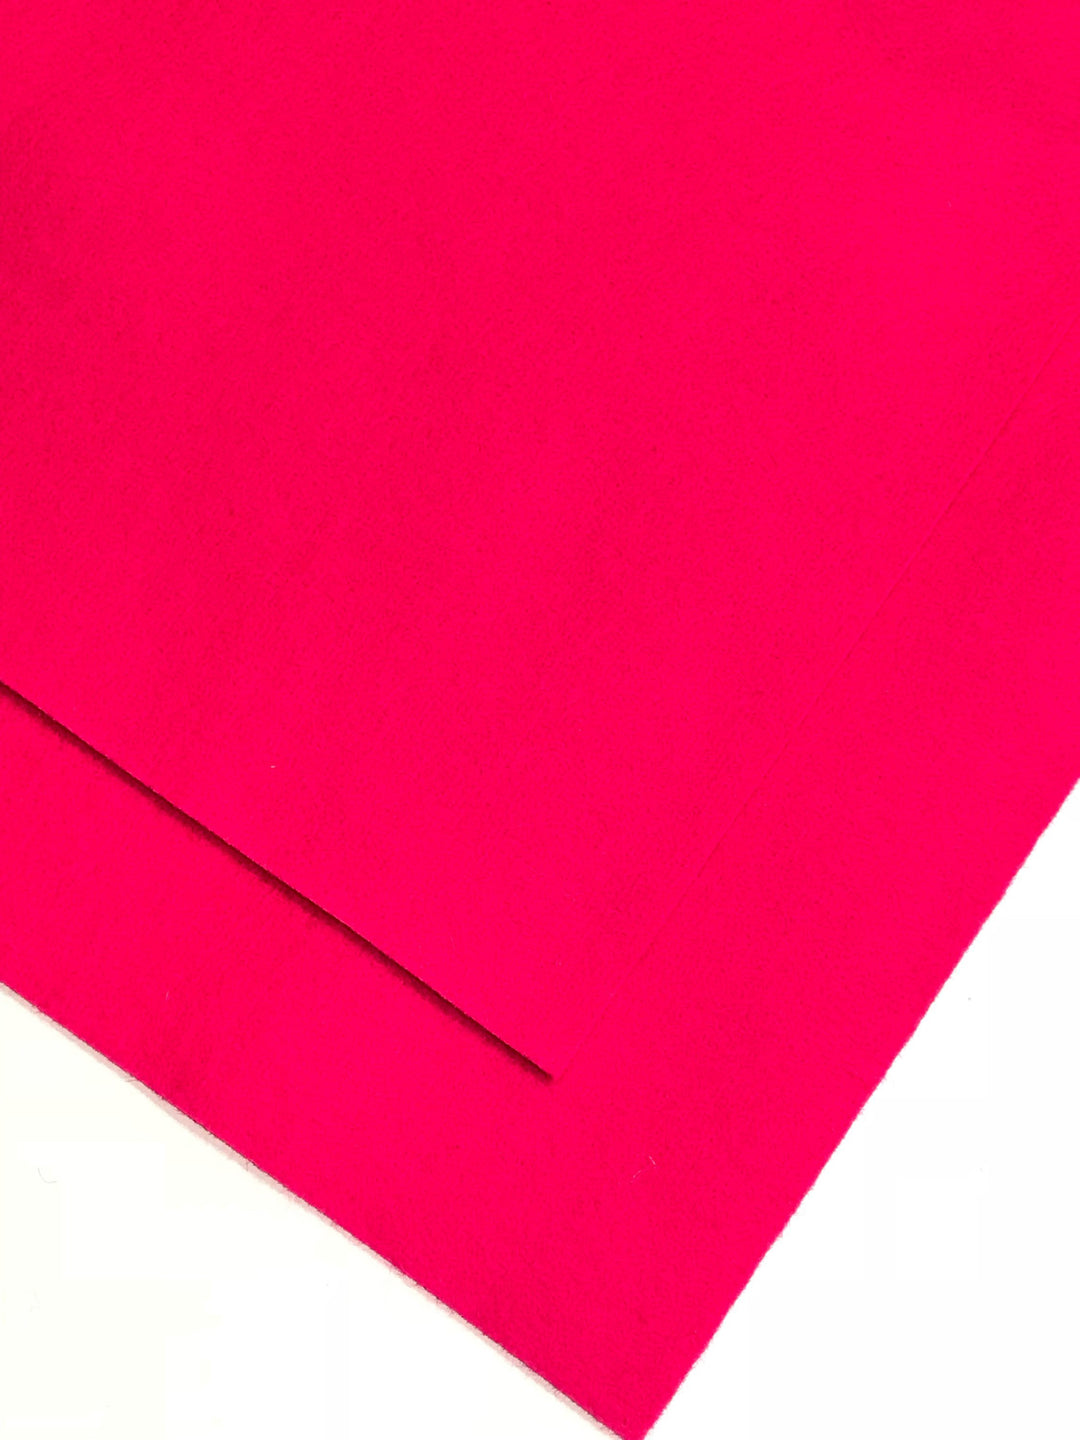 Feuille A4 en feutre de laine mérinos rose flamant rose 1 mm - N° 28